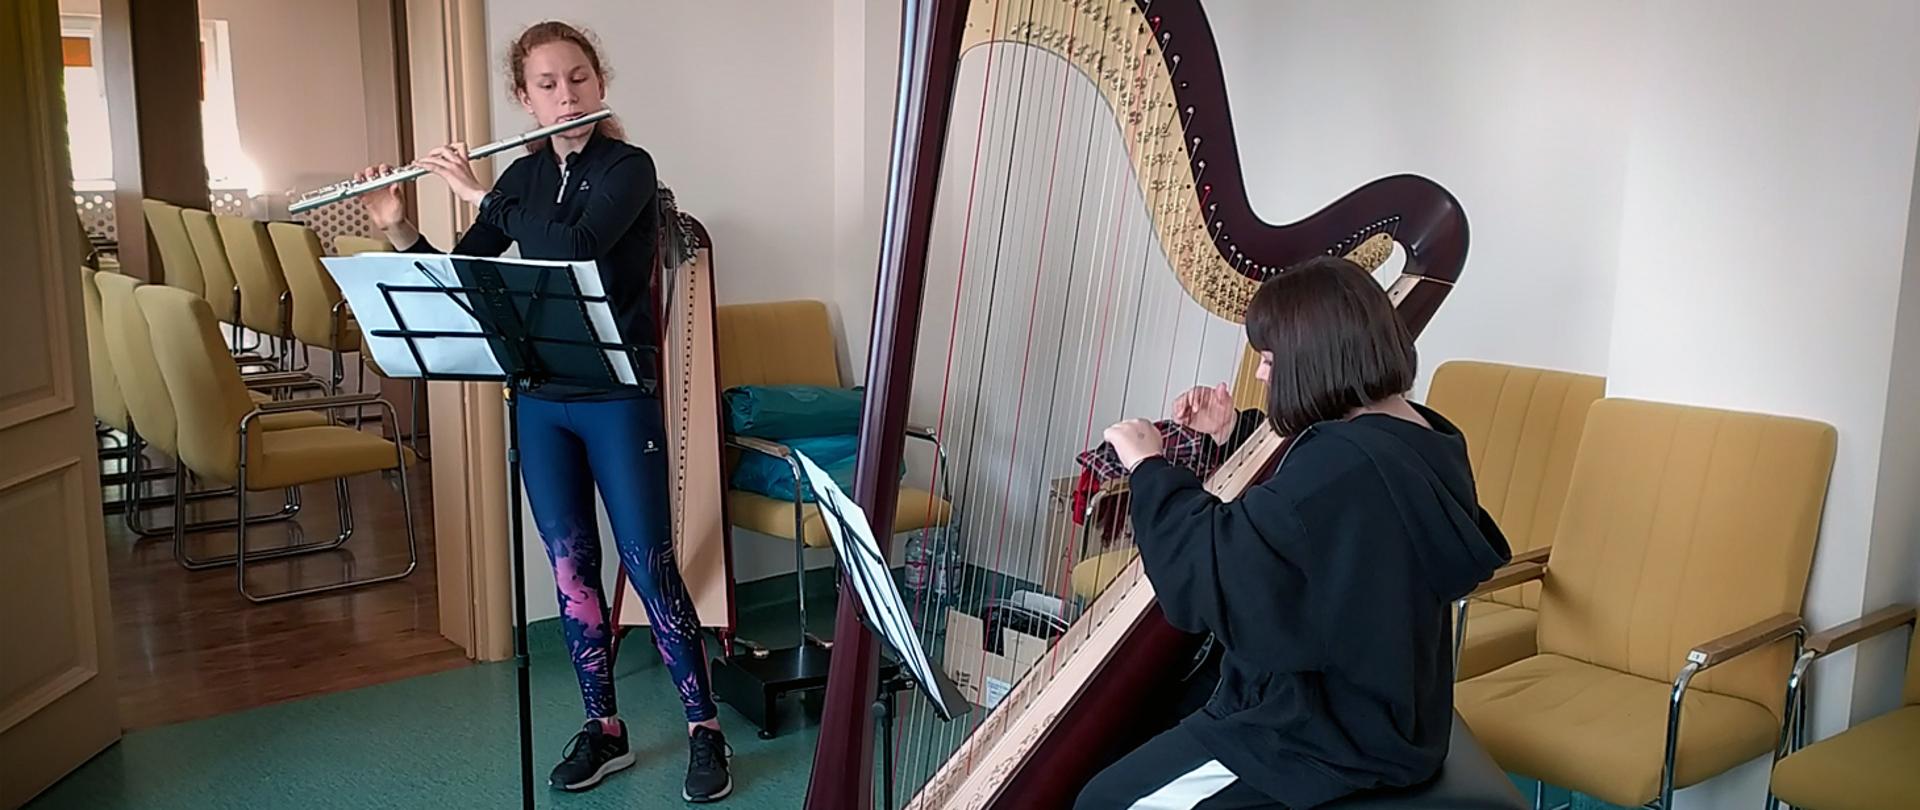 Dwie dziewczyny grają na instrumentach w sali prób. Dziewczyna z lewej stojąc gra na flecie, dziewczyna z prawej, siedząc gra na harfie.